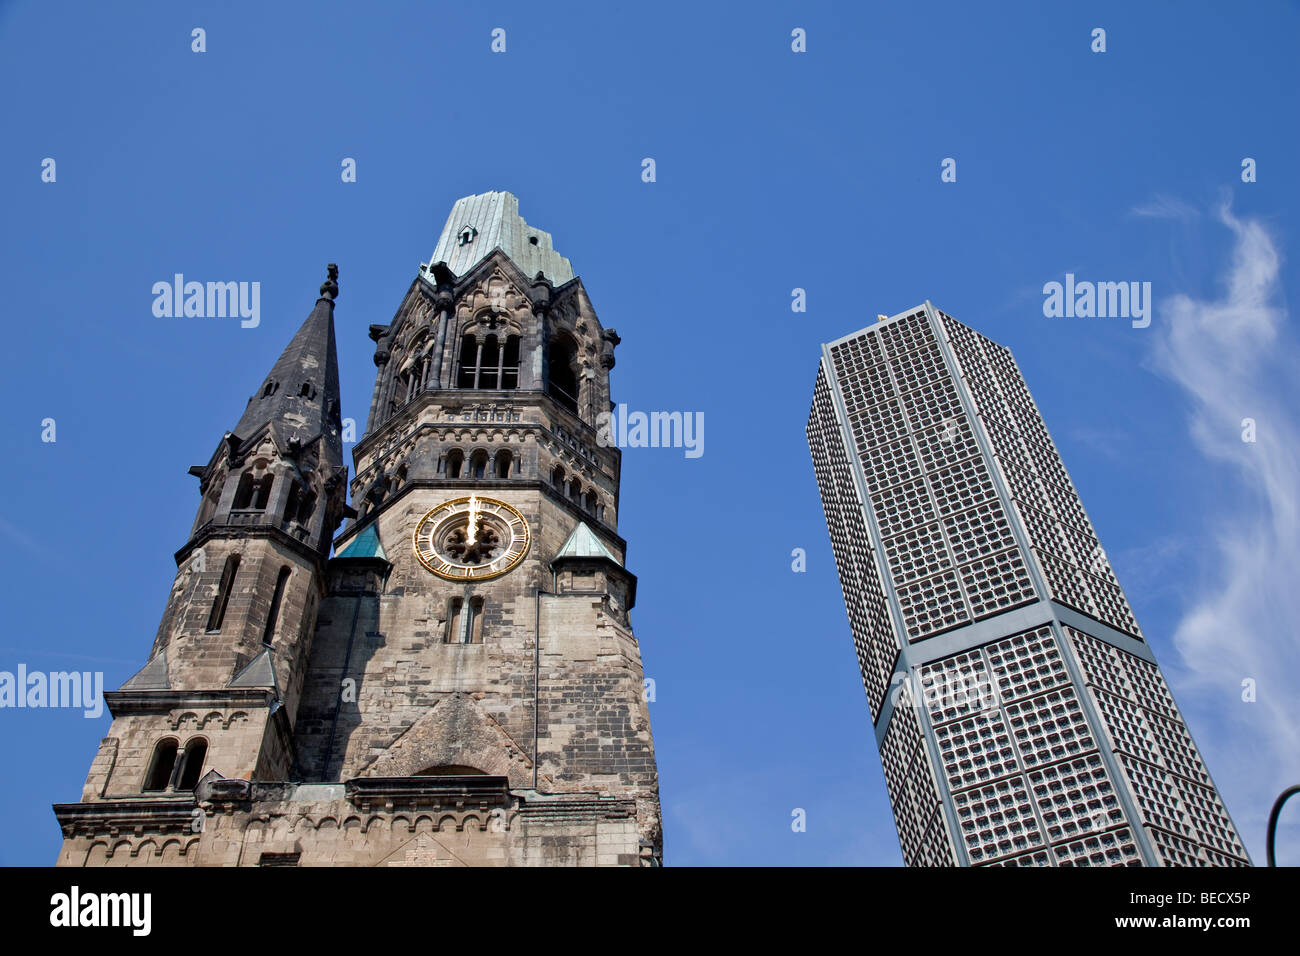 Kaiser Wilhelm Memorial Church, Gedenktniskirche, Kurfürstendamm, Berlin. Damaged spire and new belfry. Stock Photo